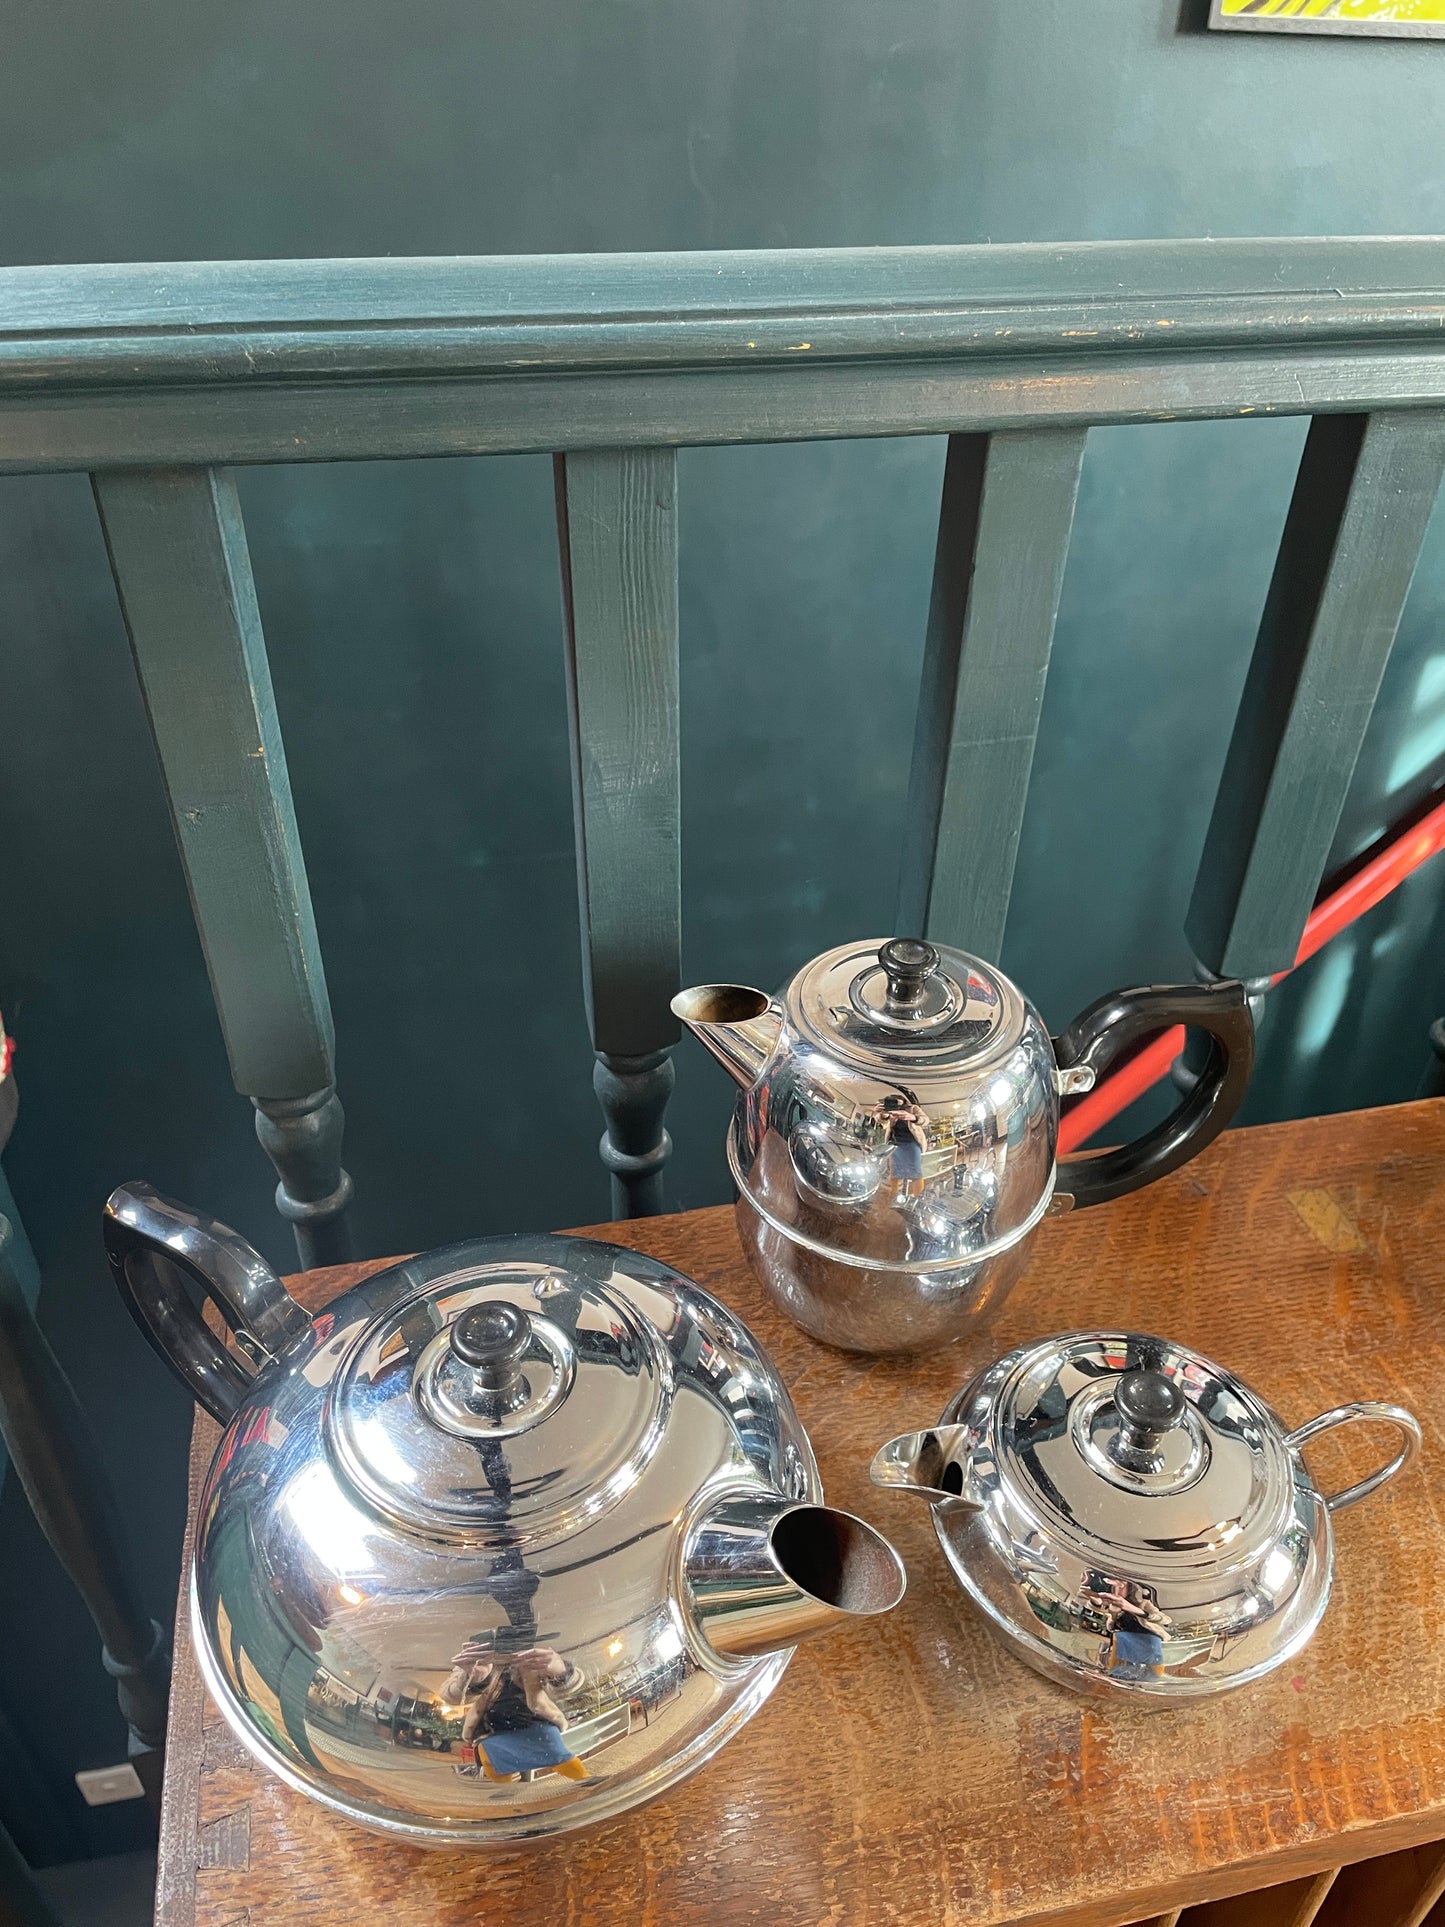 Britdis Tea Pot 4 cup - Made in NZ